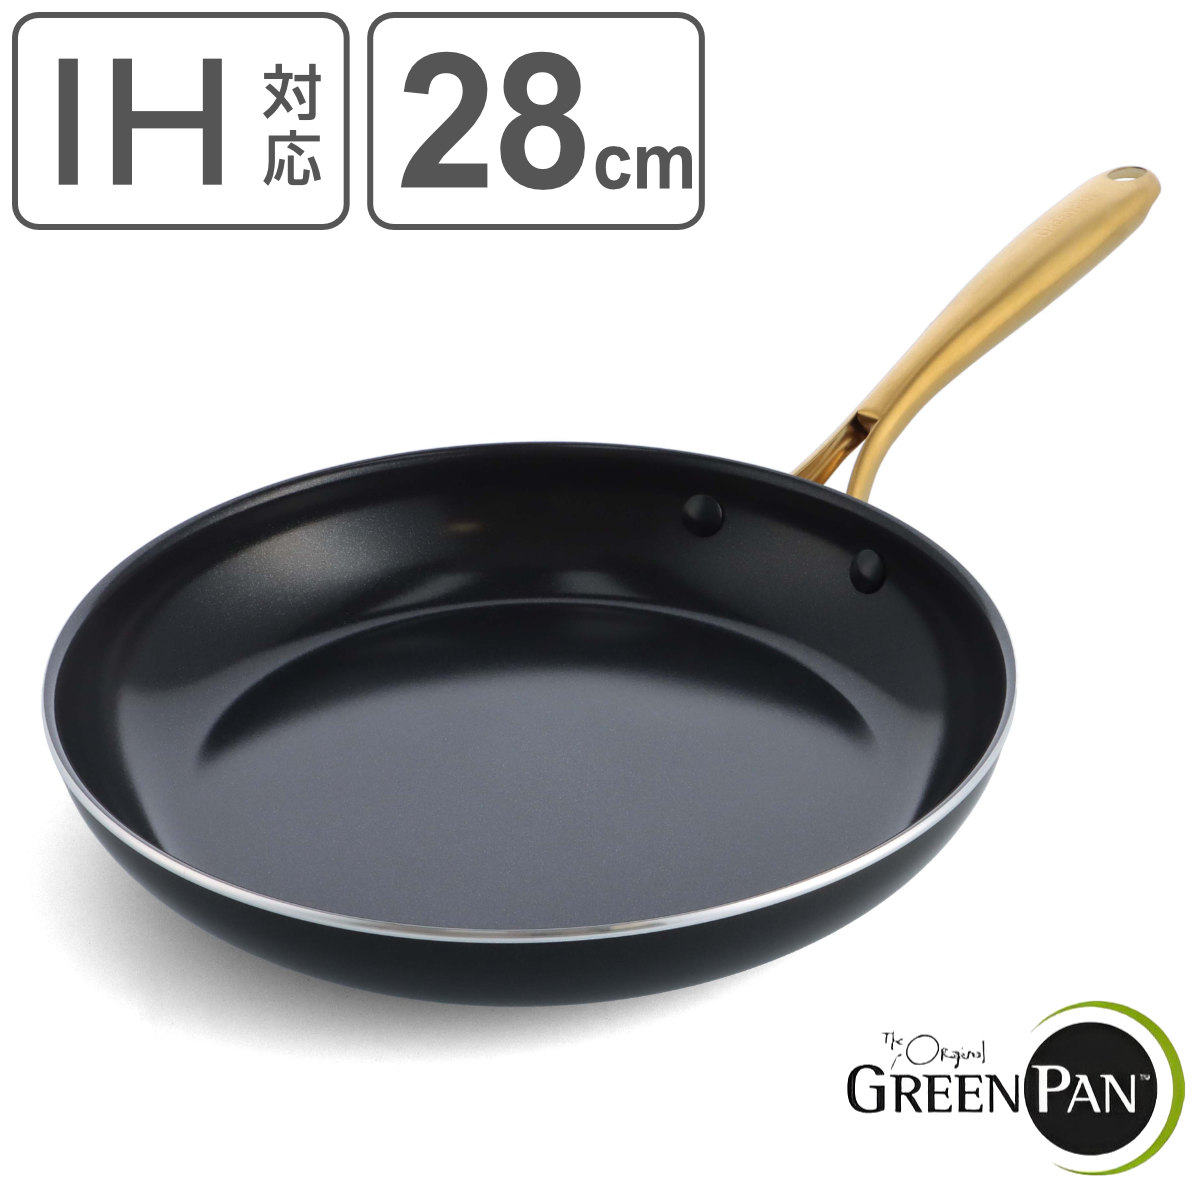 GREEN PAN フライパン 28cm IH対応 ストゥディオ